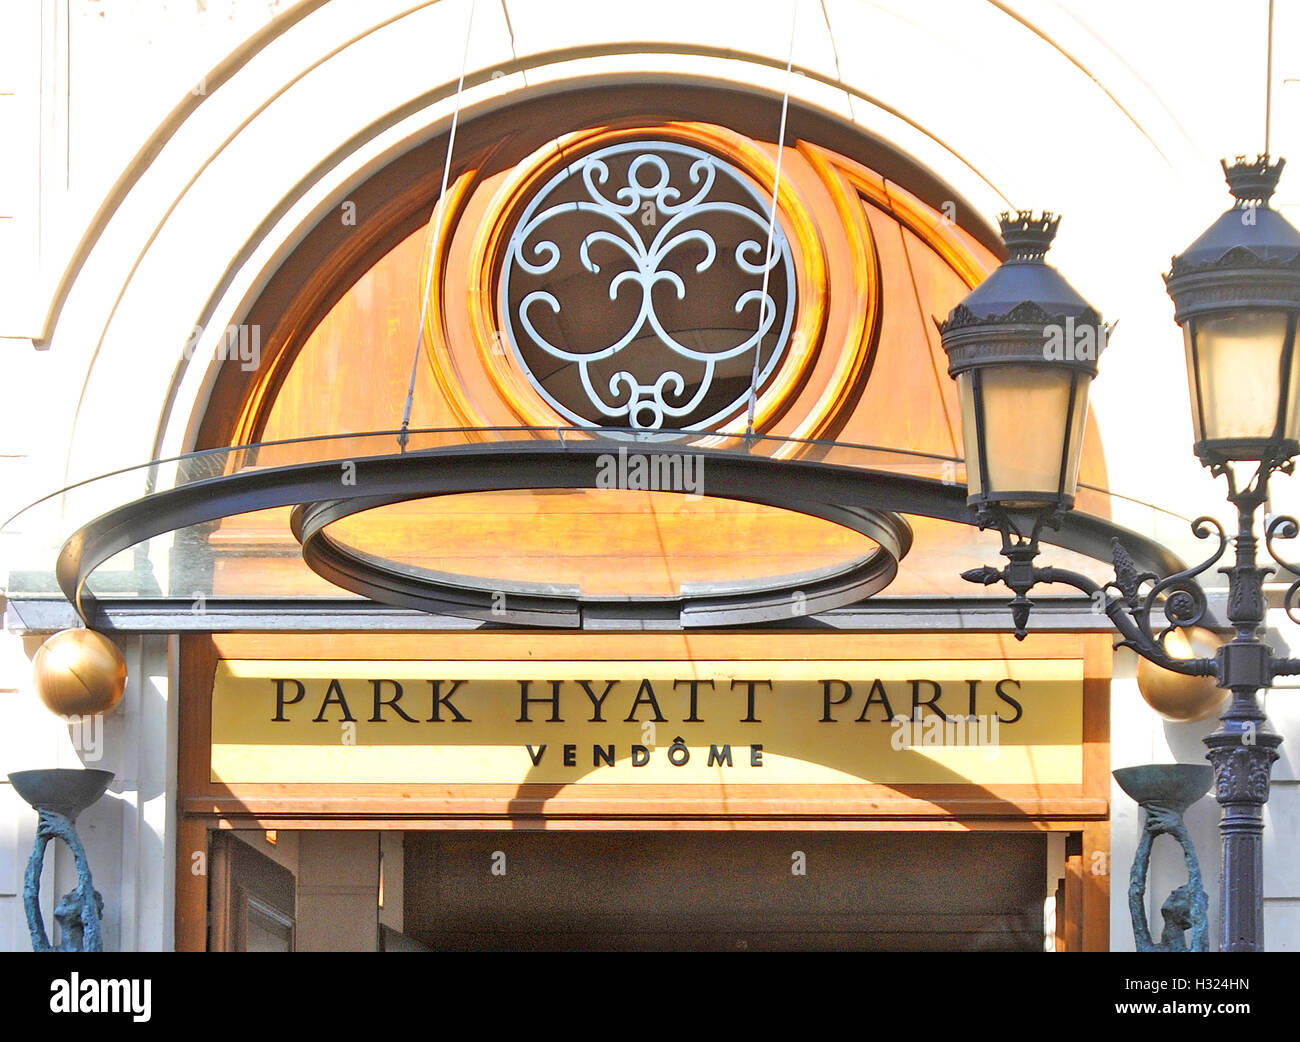 Park Hyatt Paris Vendome hotel rue de la Paix Paris France Stock Photo